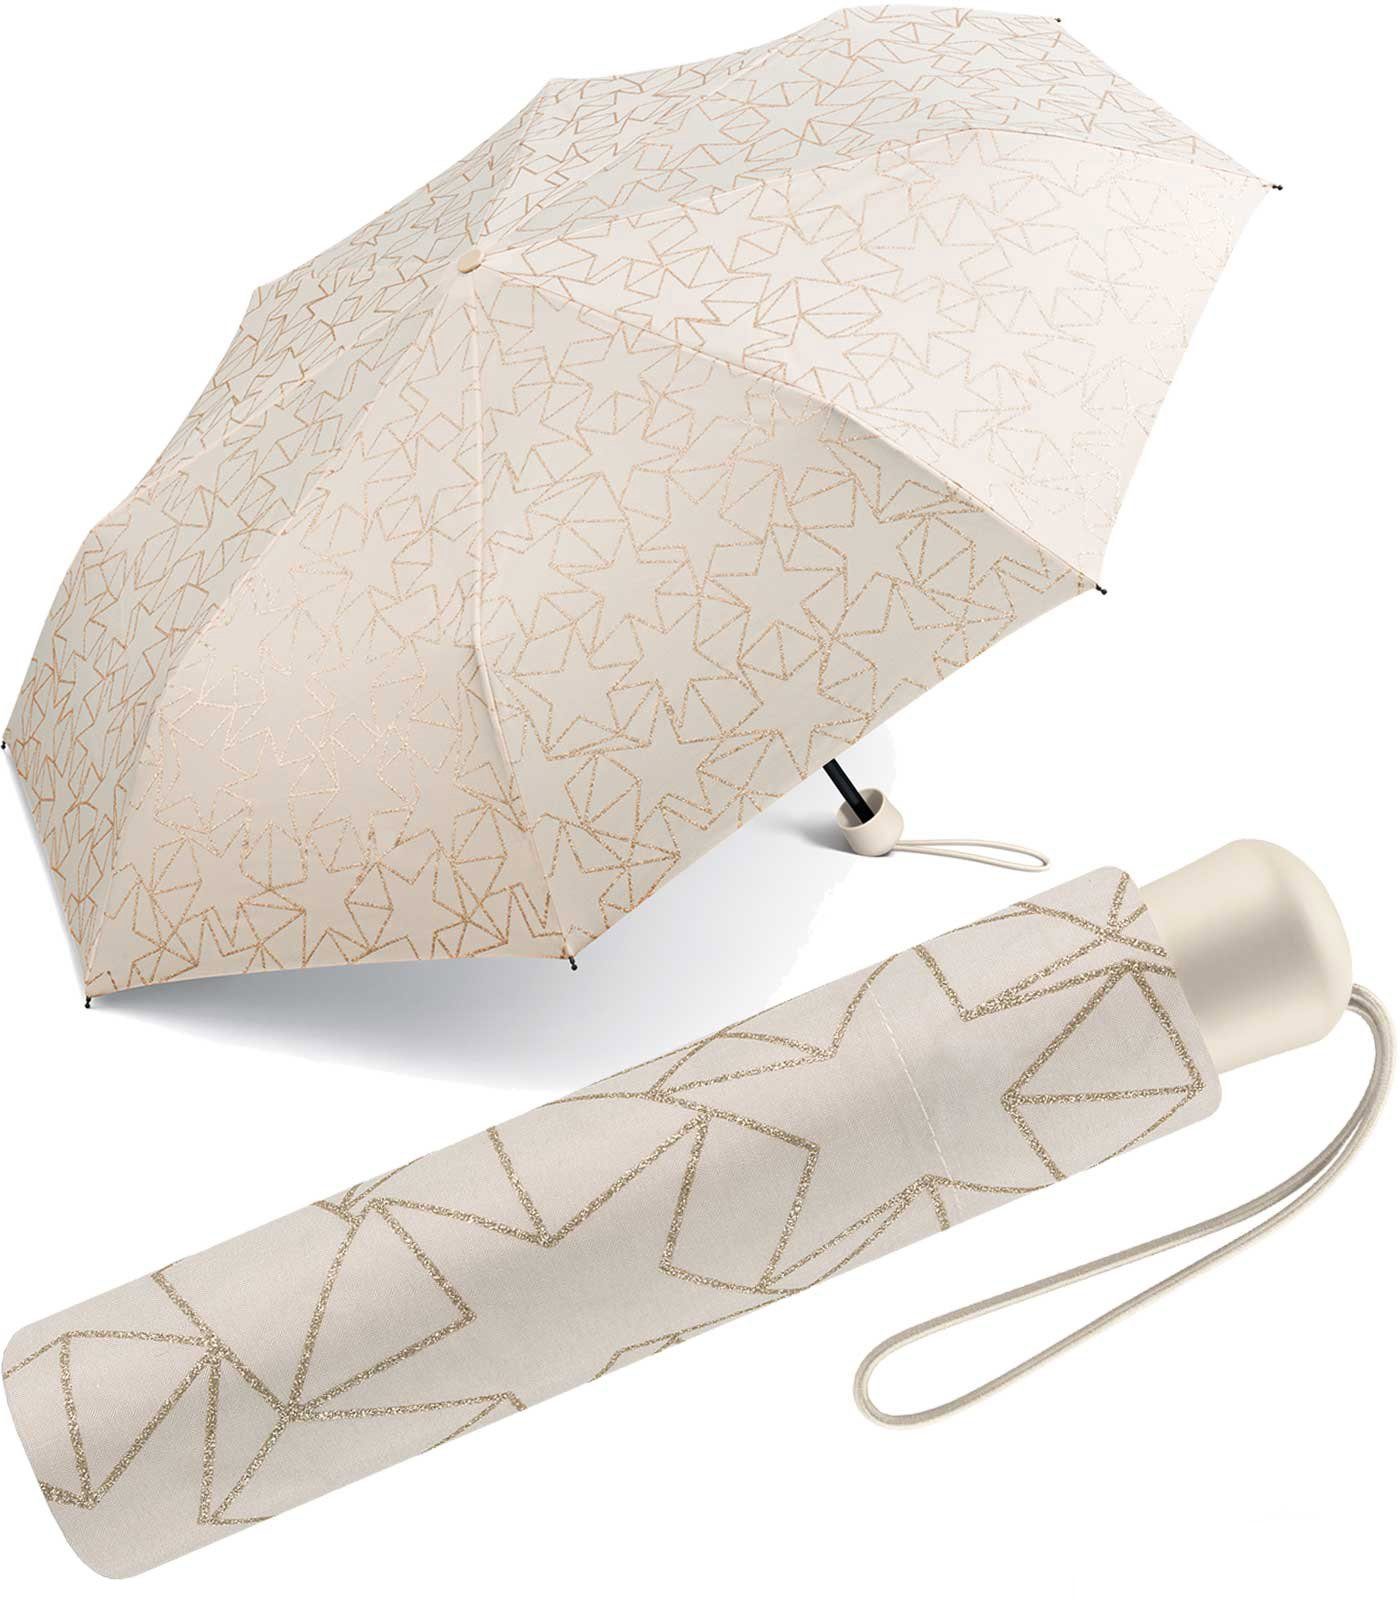 Esprit Taschenregenschirm schöner, kleiner Schirm für Damen - Glitter  Stars, das besondere Design als Eyecatcher - rainy days